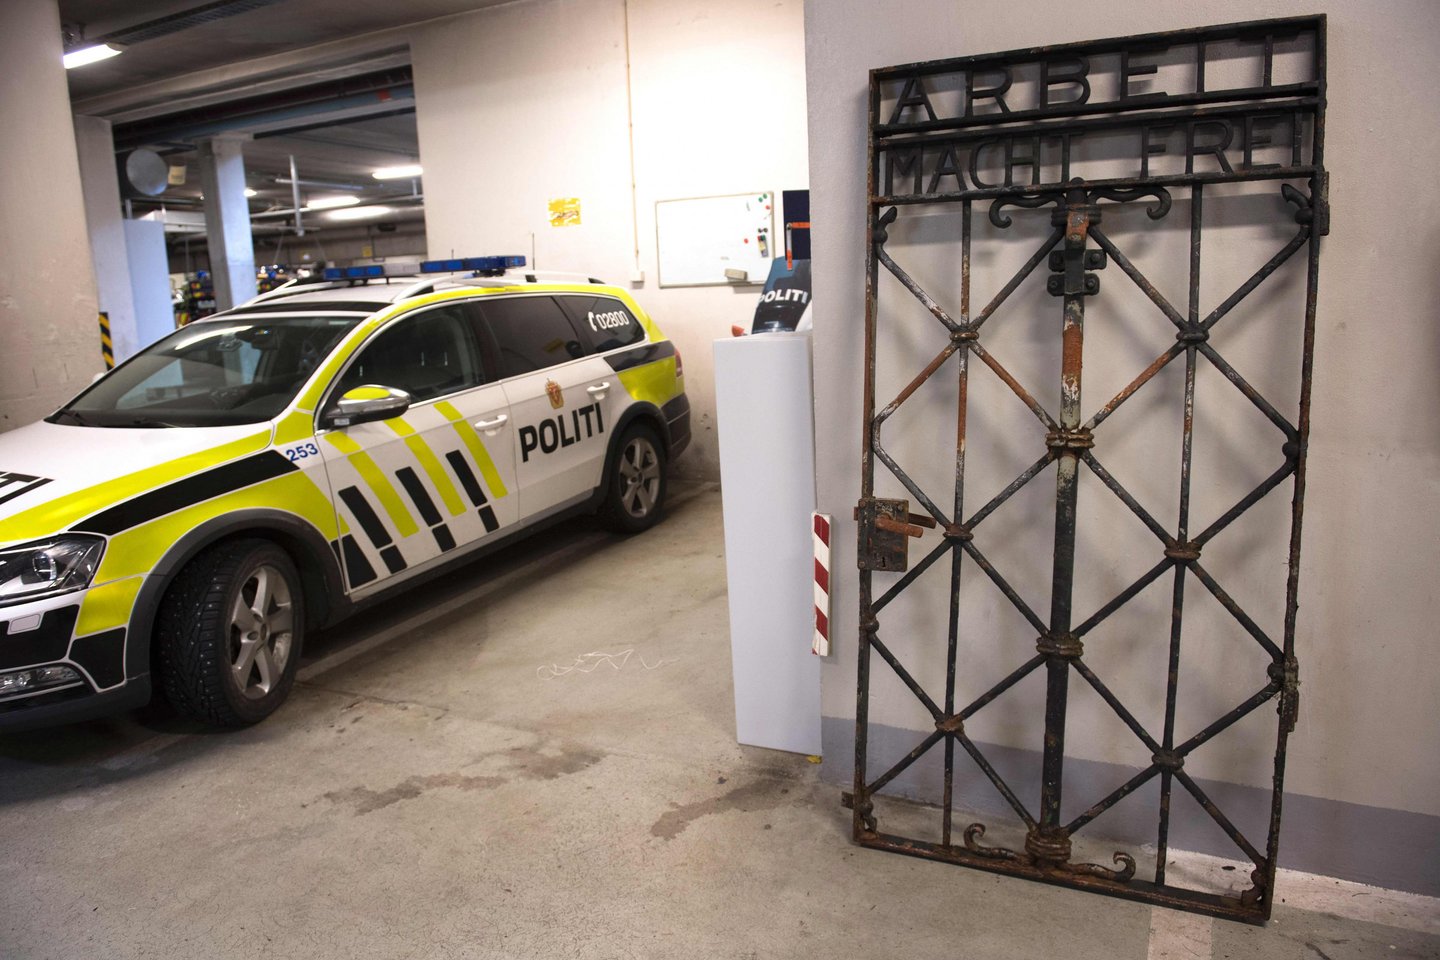   Norvegijos policija pateikė oficialius kaltinimus keliems užsieniečiams.<br> AFP/Scanpix nuotr.